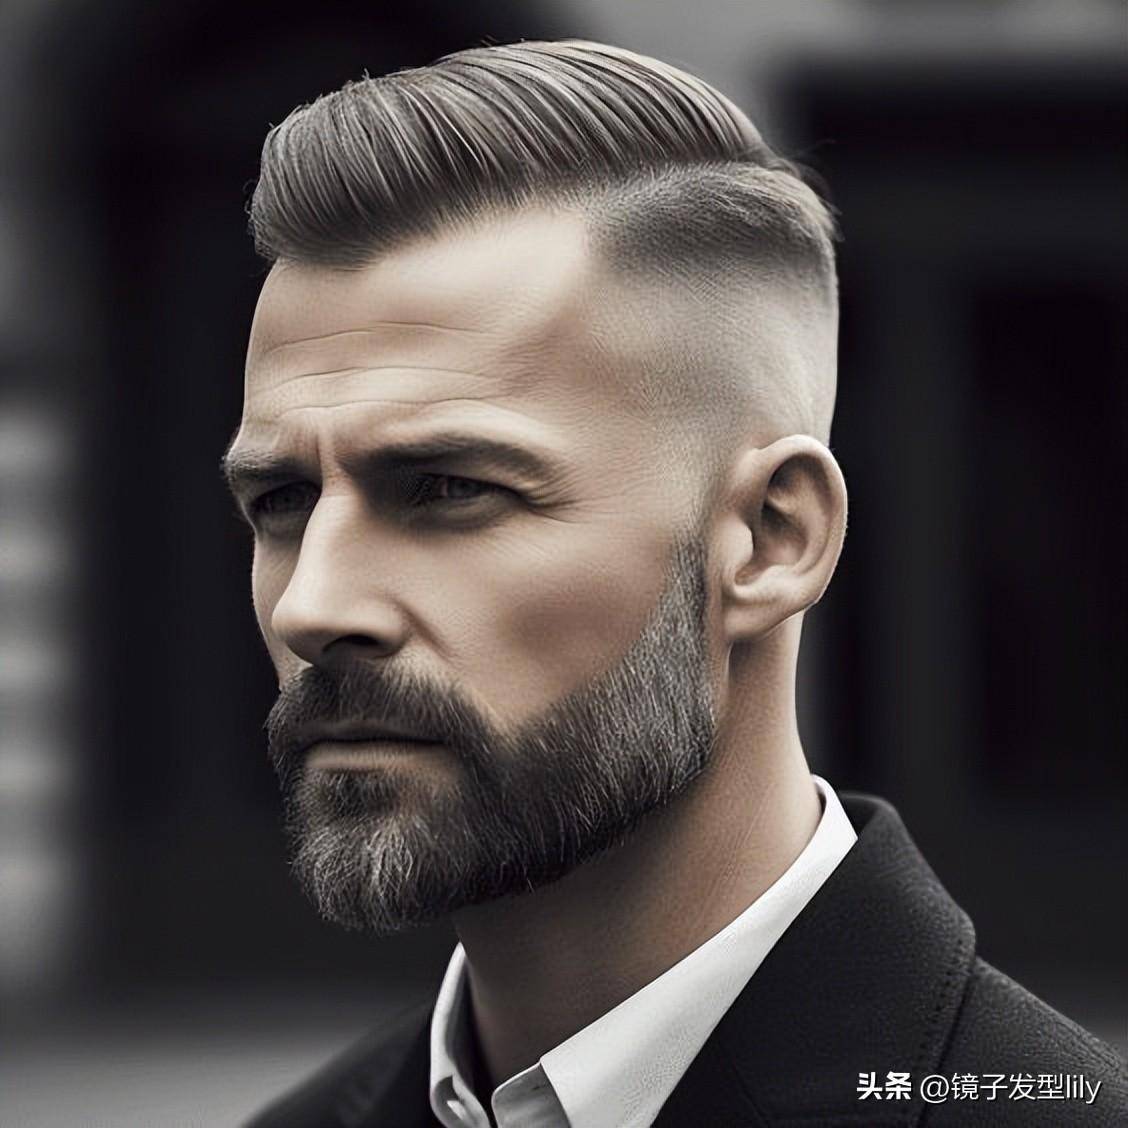 中年男士的发型智慧:两侧铲短,清爽时尚永不过时